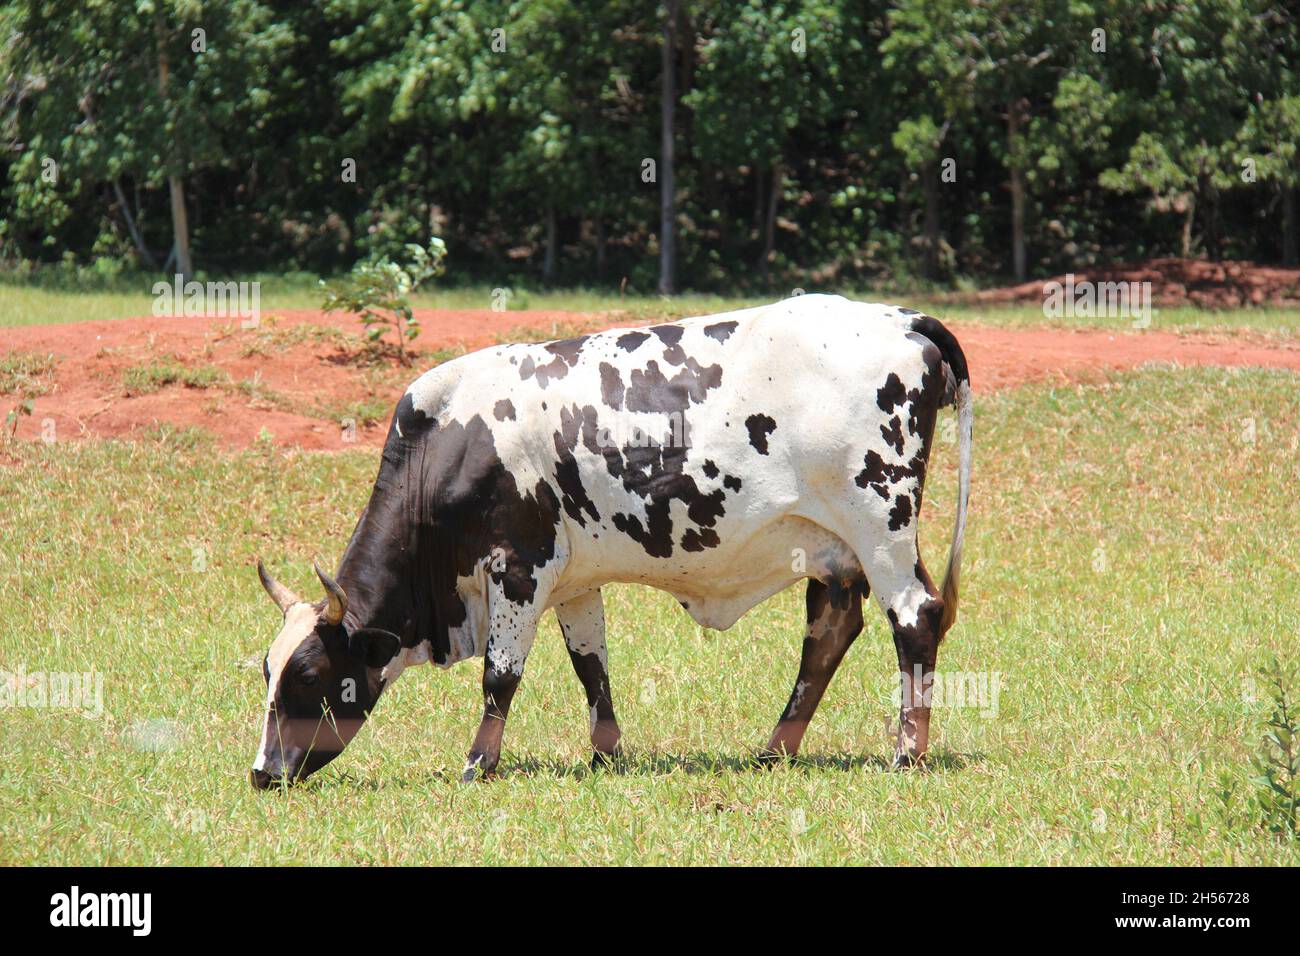 Vache: Blanche avec des taches noires, paître dans une ferme, à Mato Grosso do Sul, Brésil. Banque D'Images